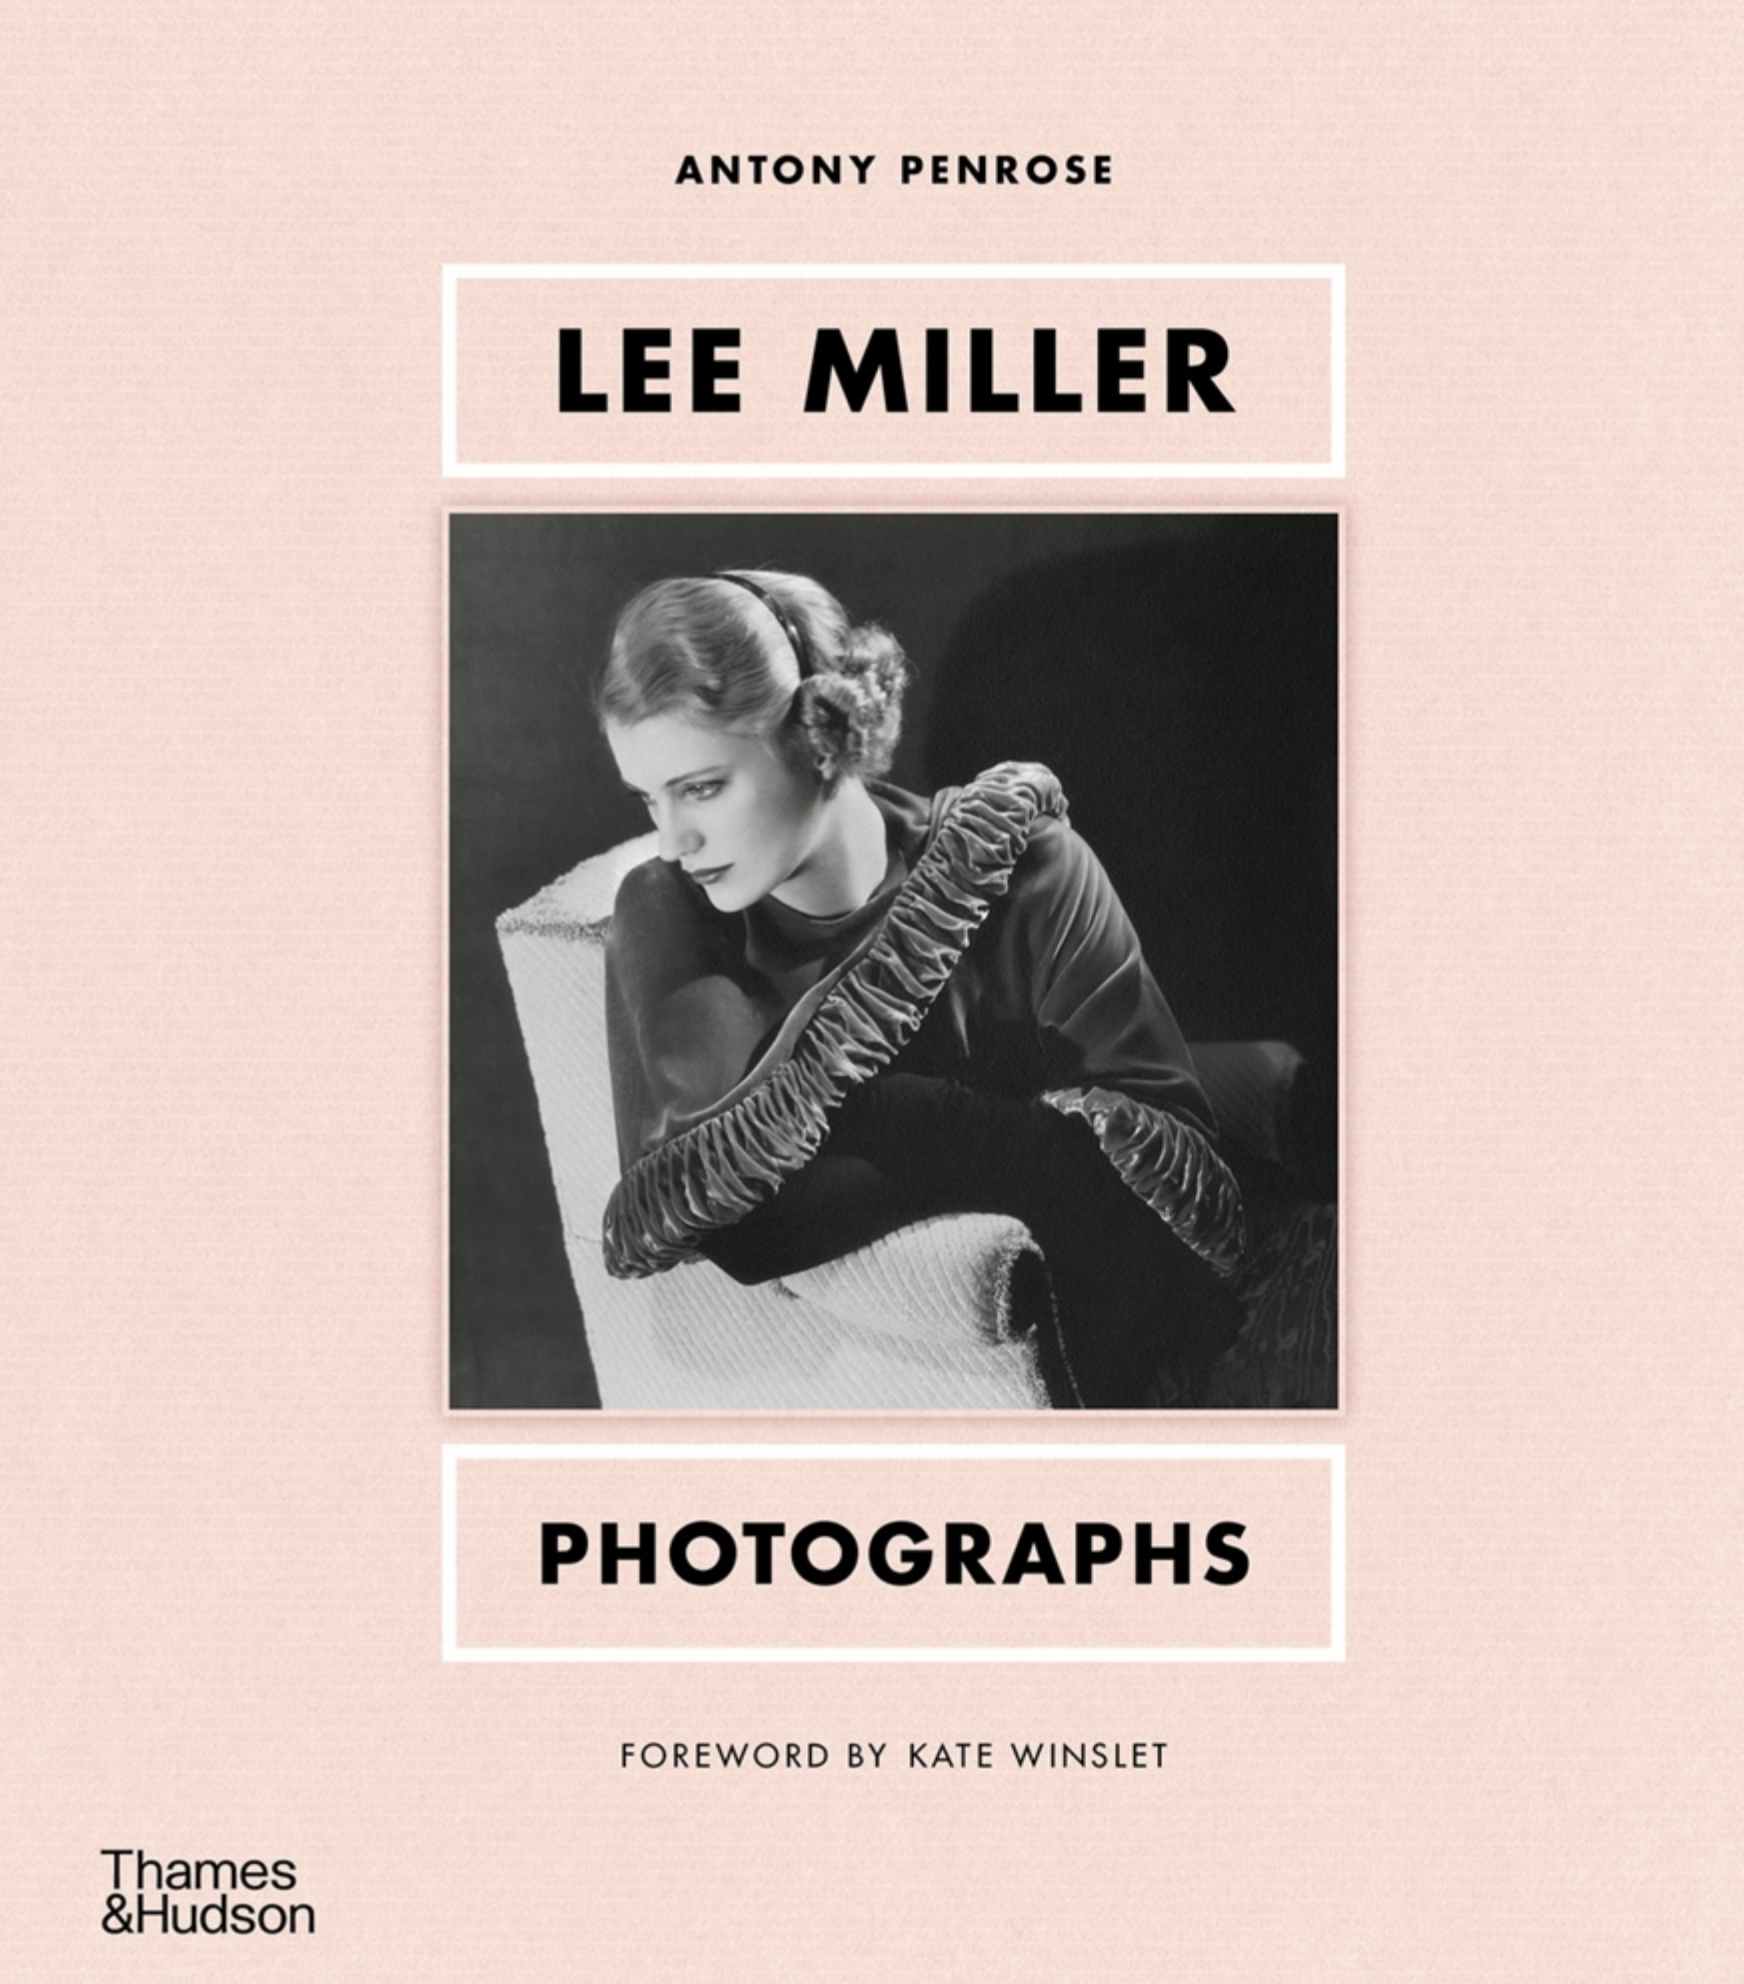 Lee Miller Photographs x Antony Penrose